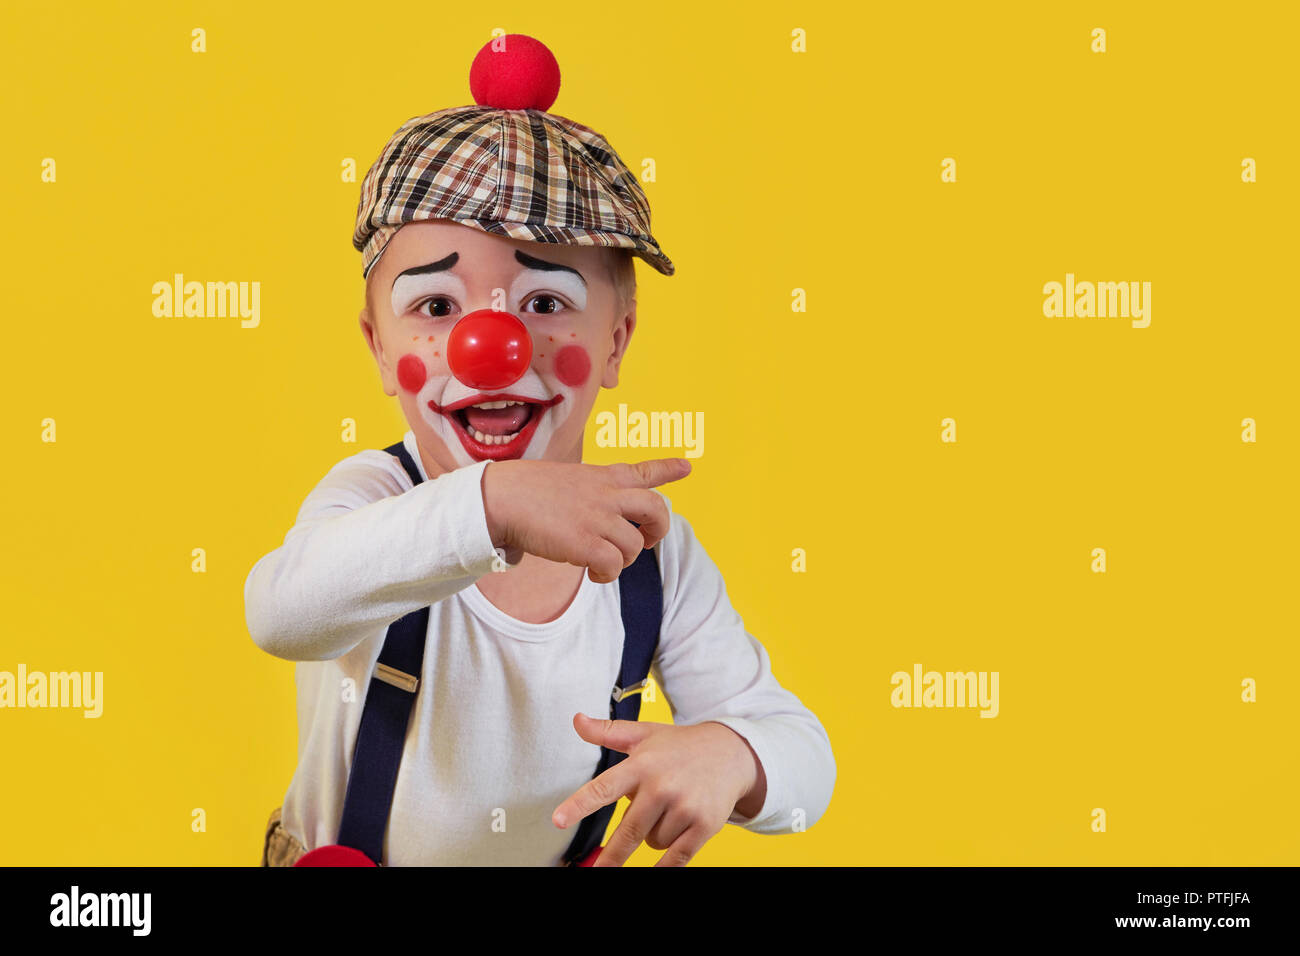 Kind clown Lächeln zeigt einen Finger Kopie Raum auf gelben Hintergrund. Lustige kleine Clown mit roter Nase. Konzept Geburtstag, Tag 1 April, Party. Schöne portrait kid Jester im Studio. Stockfoto